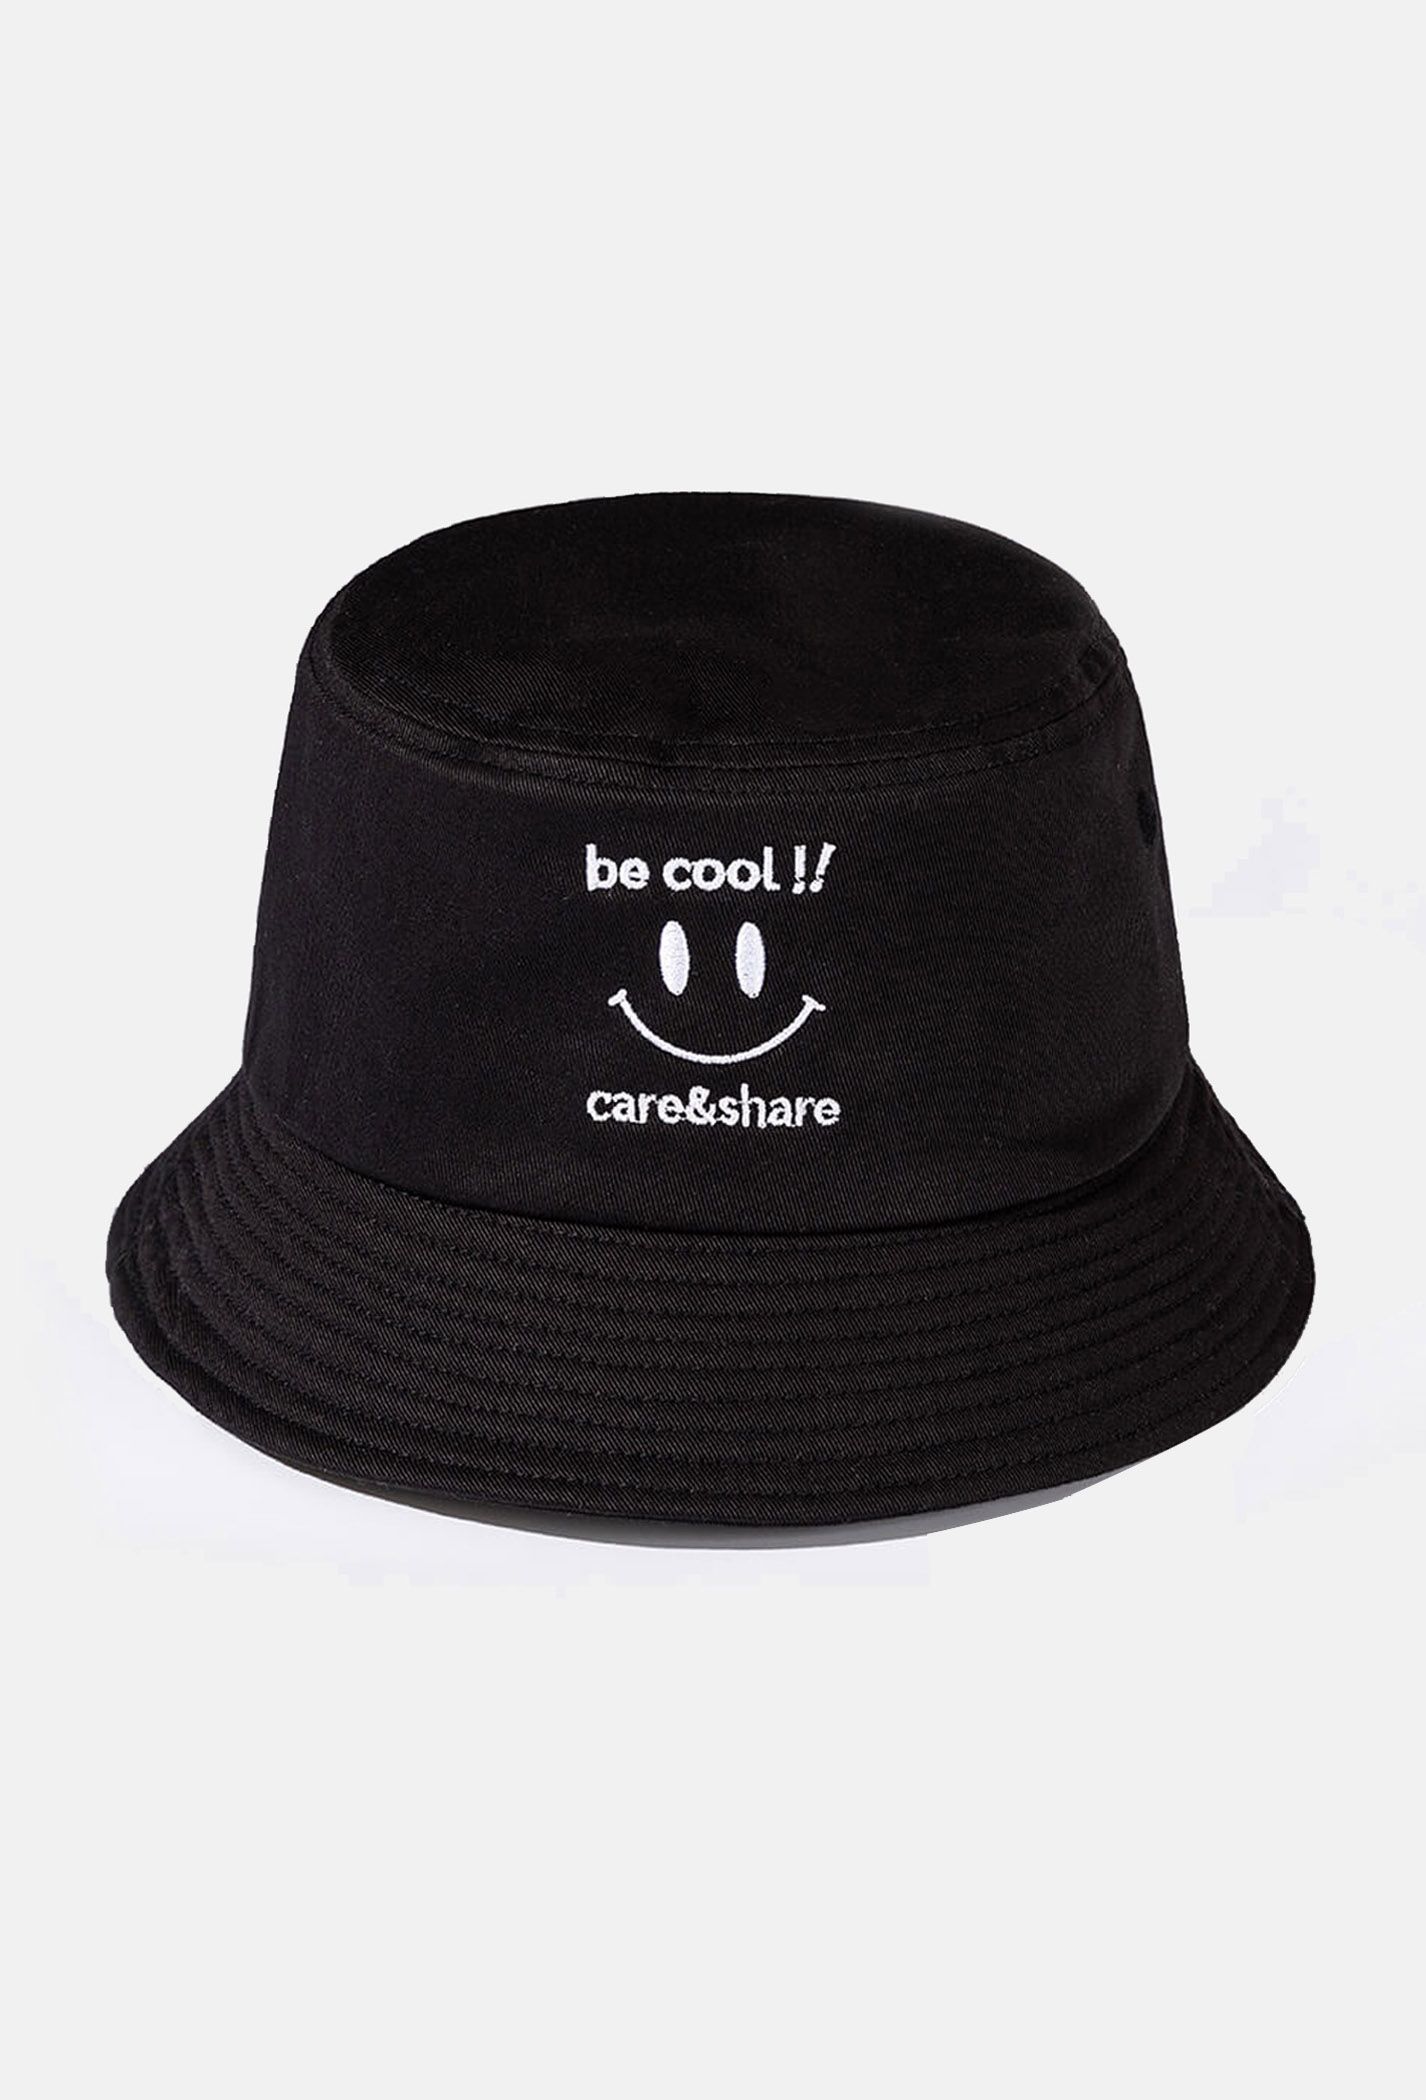 Mũ/Nón Bucket Hat thêu Be Cool!!  ��en